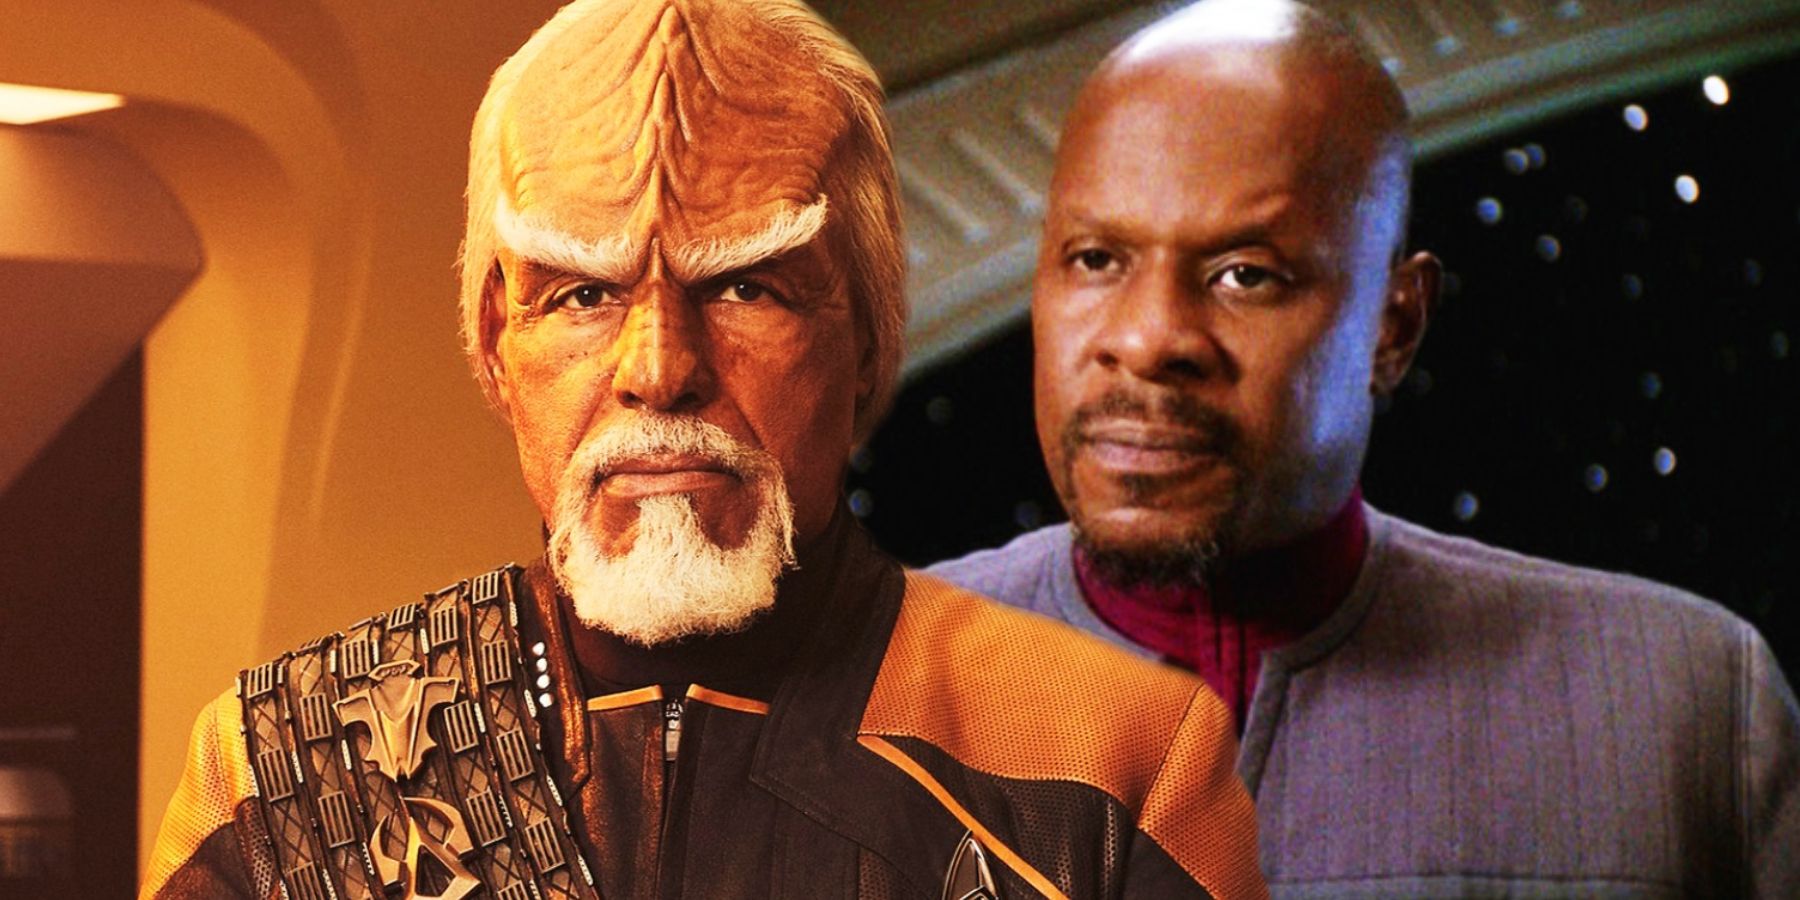 Michael Dorn as Captain Worf and Avery Brooks as Captain Sisko in Star Trek